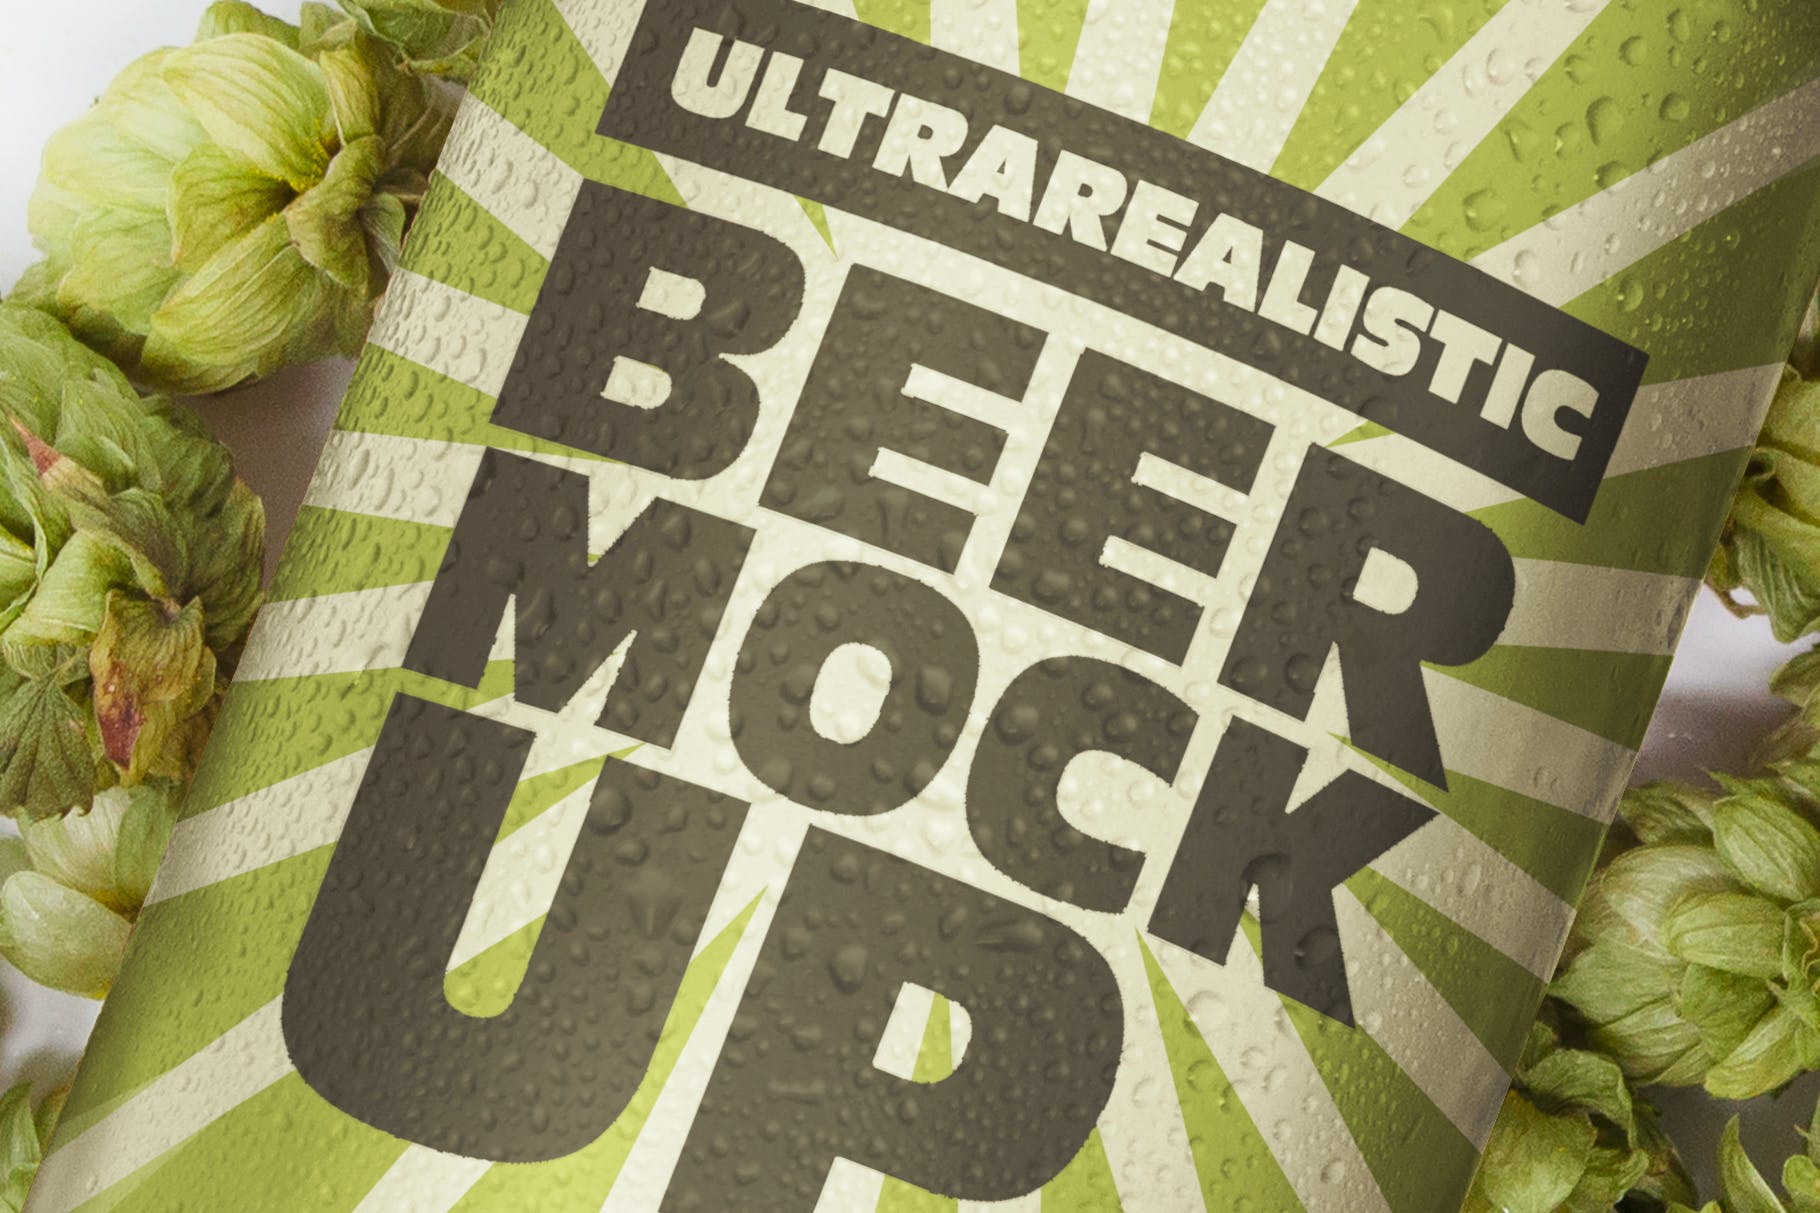 两种尺寸啤酒罐易拉罐外观设计图第一素材精选 Beer Can Duo Mockup插图(3)